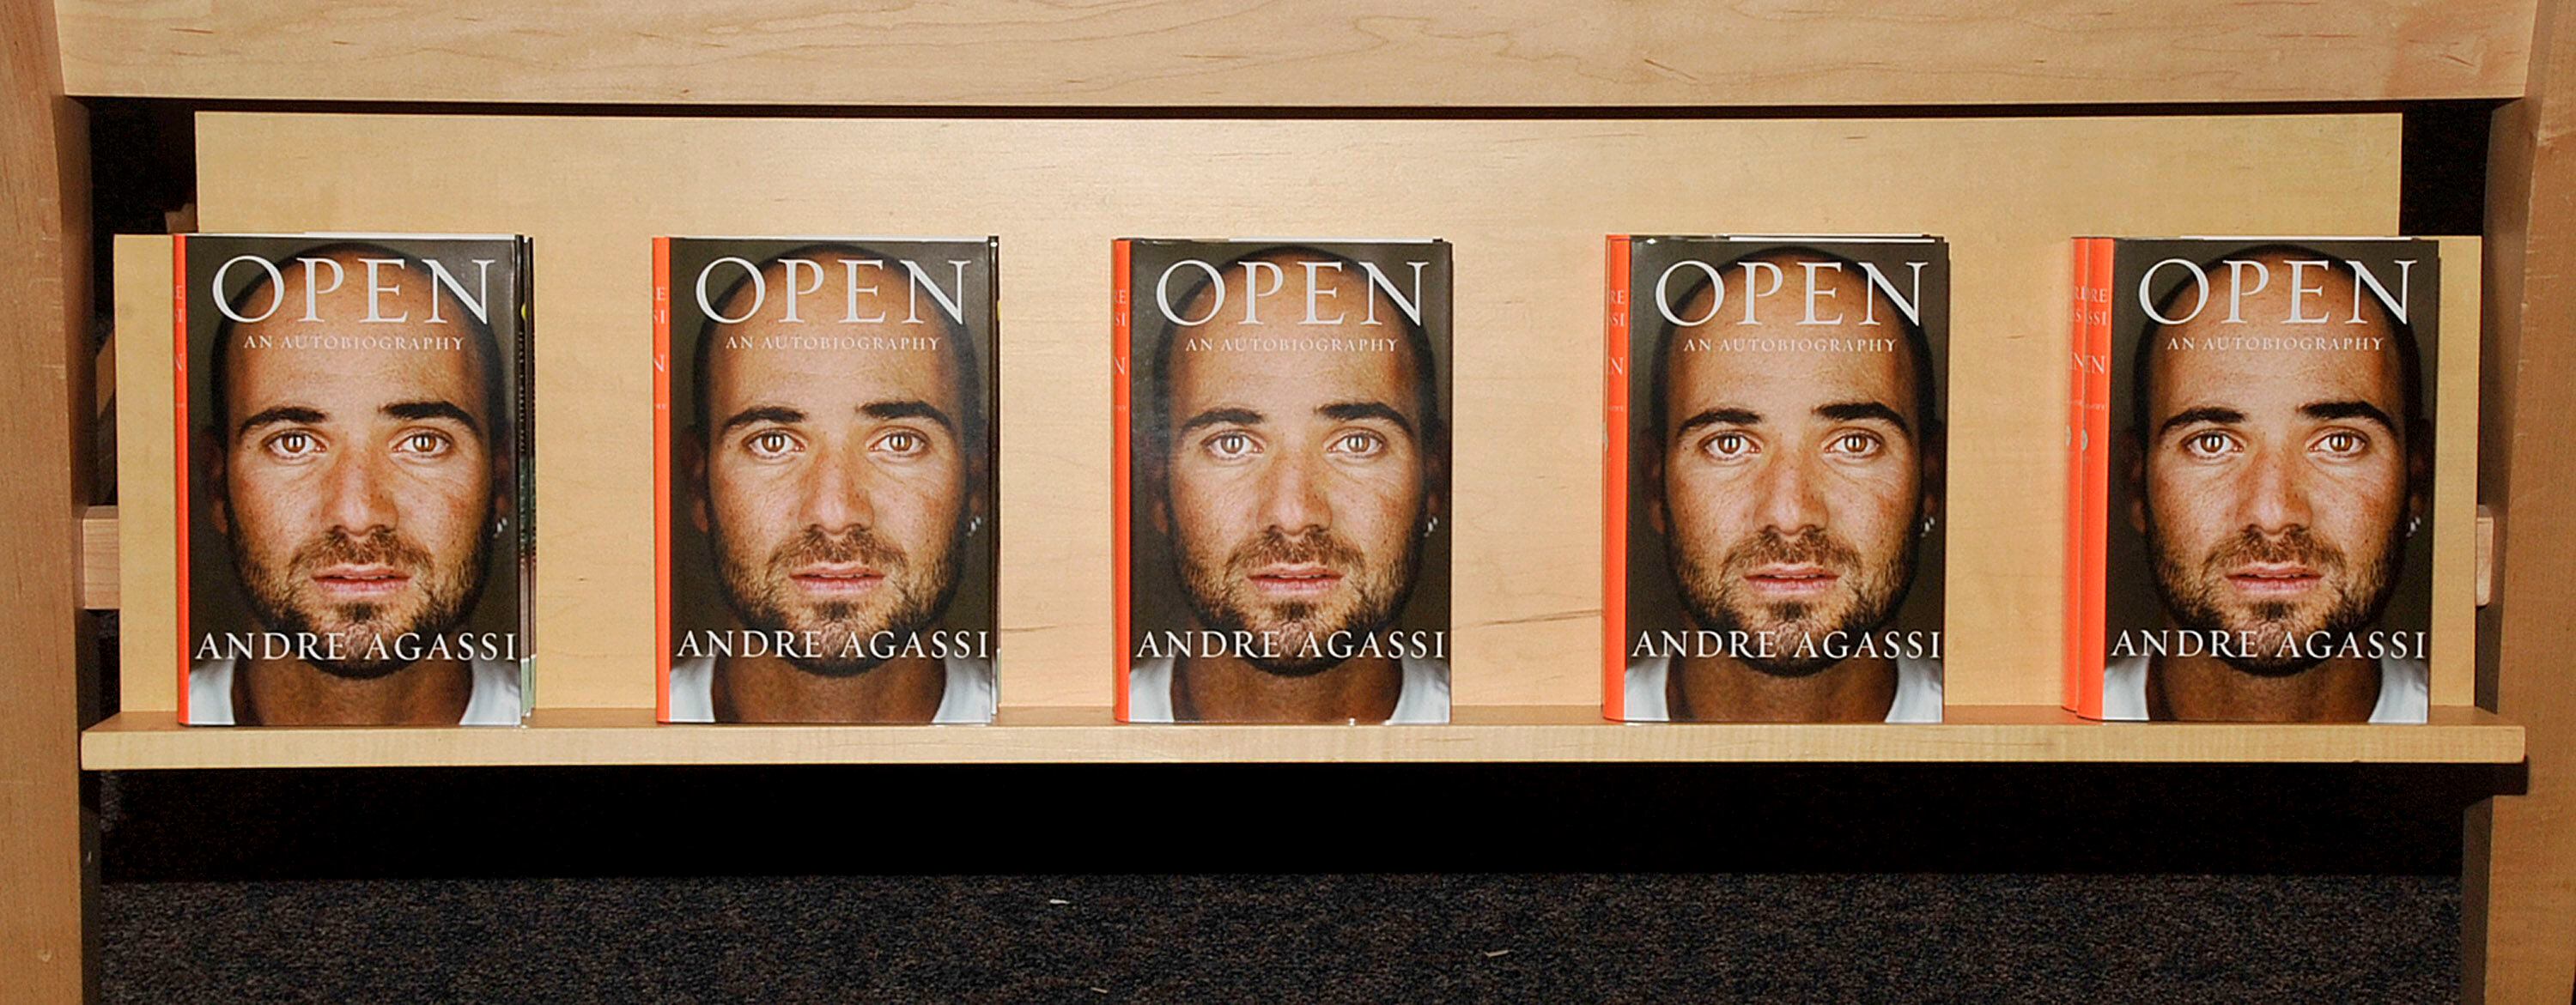 Copias de 'Open', de andre Agassi, en una librería de California.